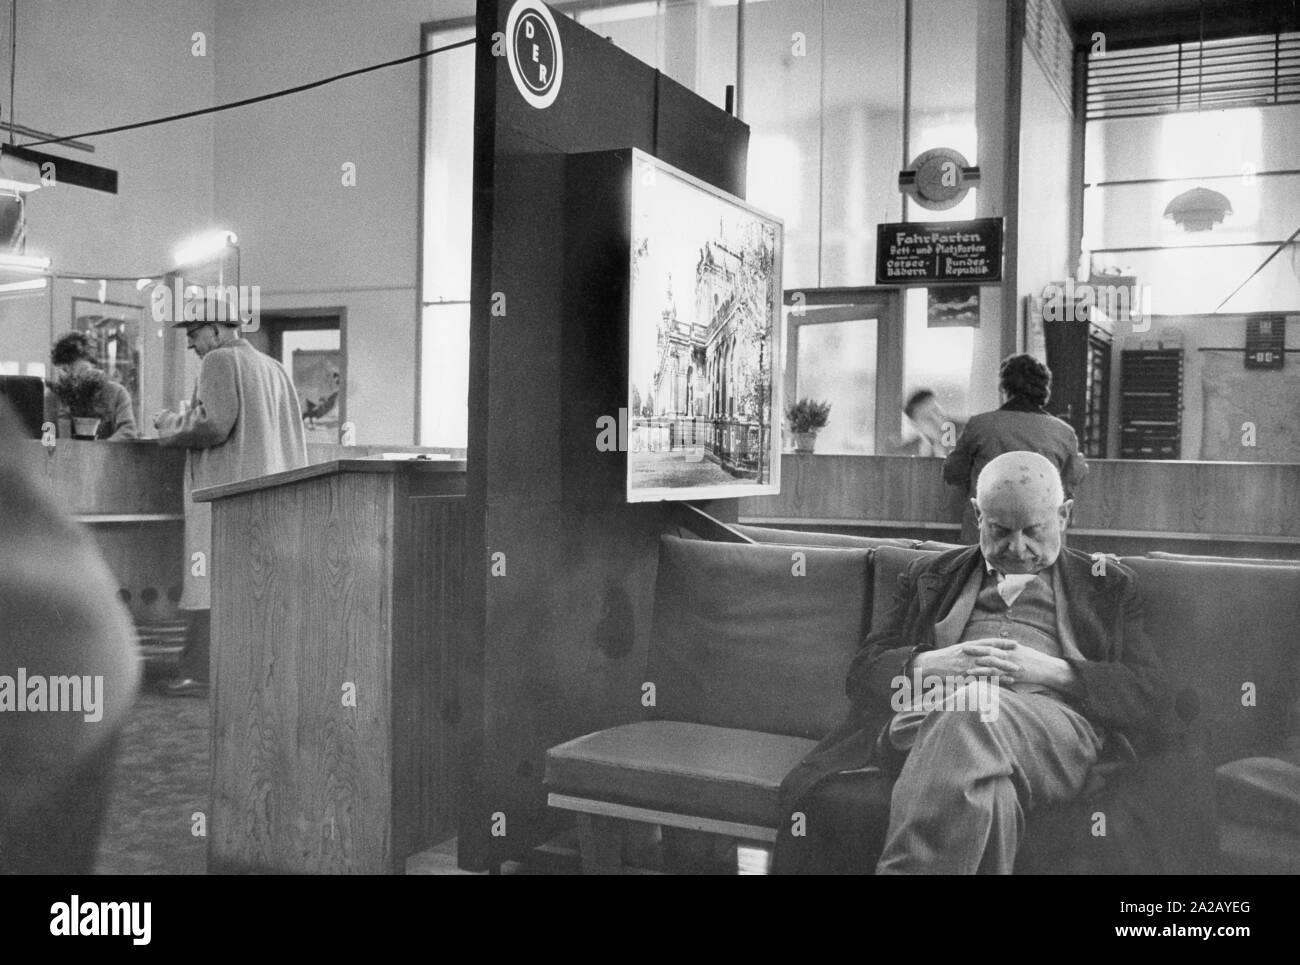 Szene in einem Tourist Office in Leipzig, im Vordergrund ein alter Mann schlief auf der Richtbank. Stockfoto